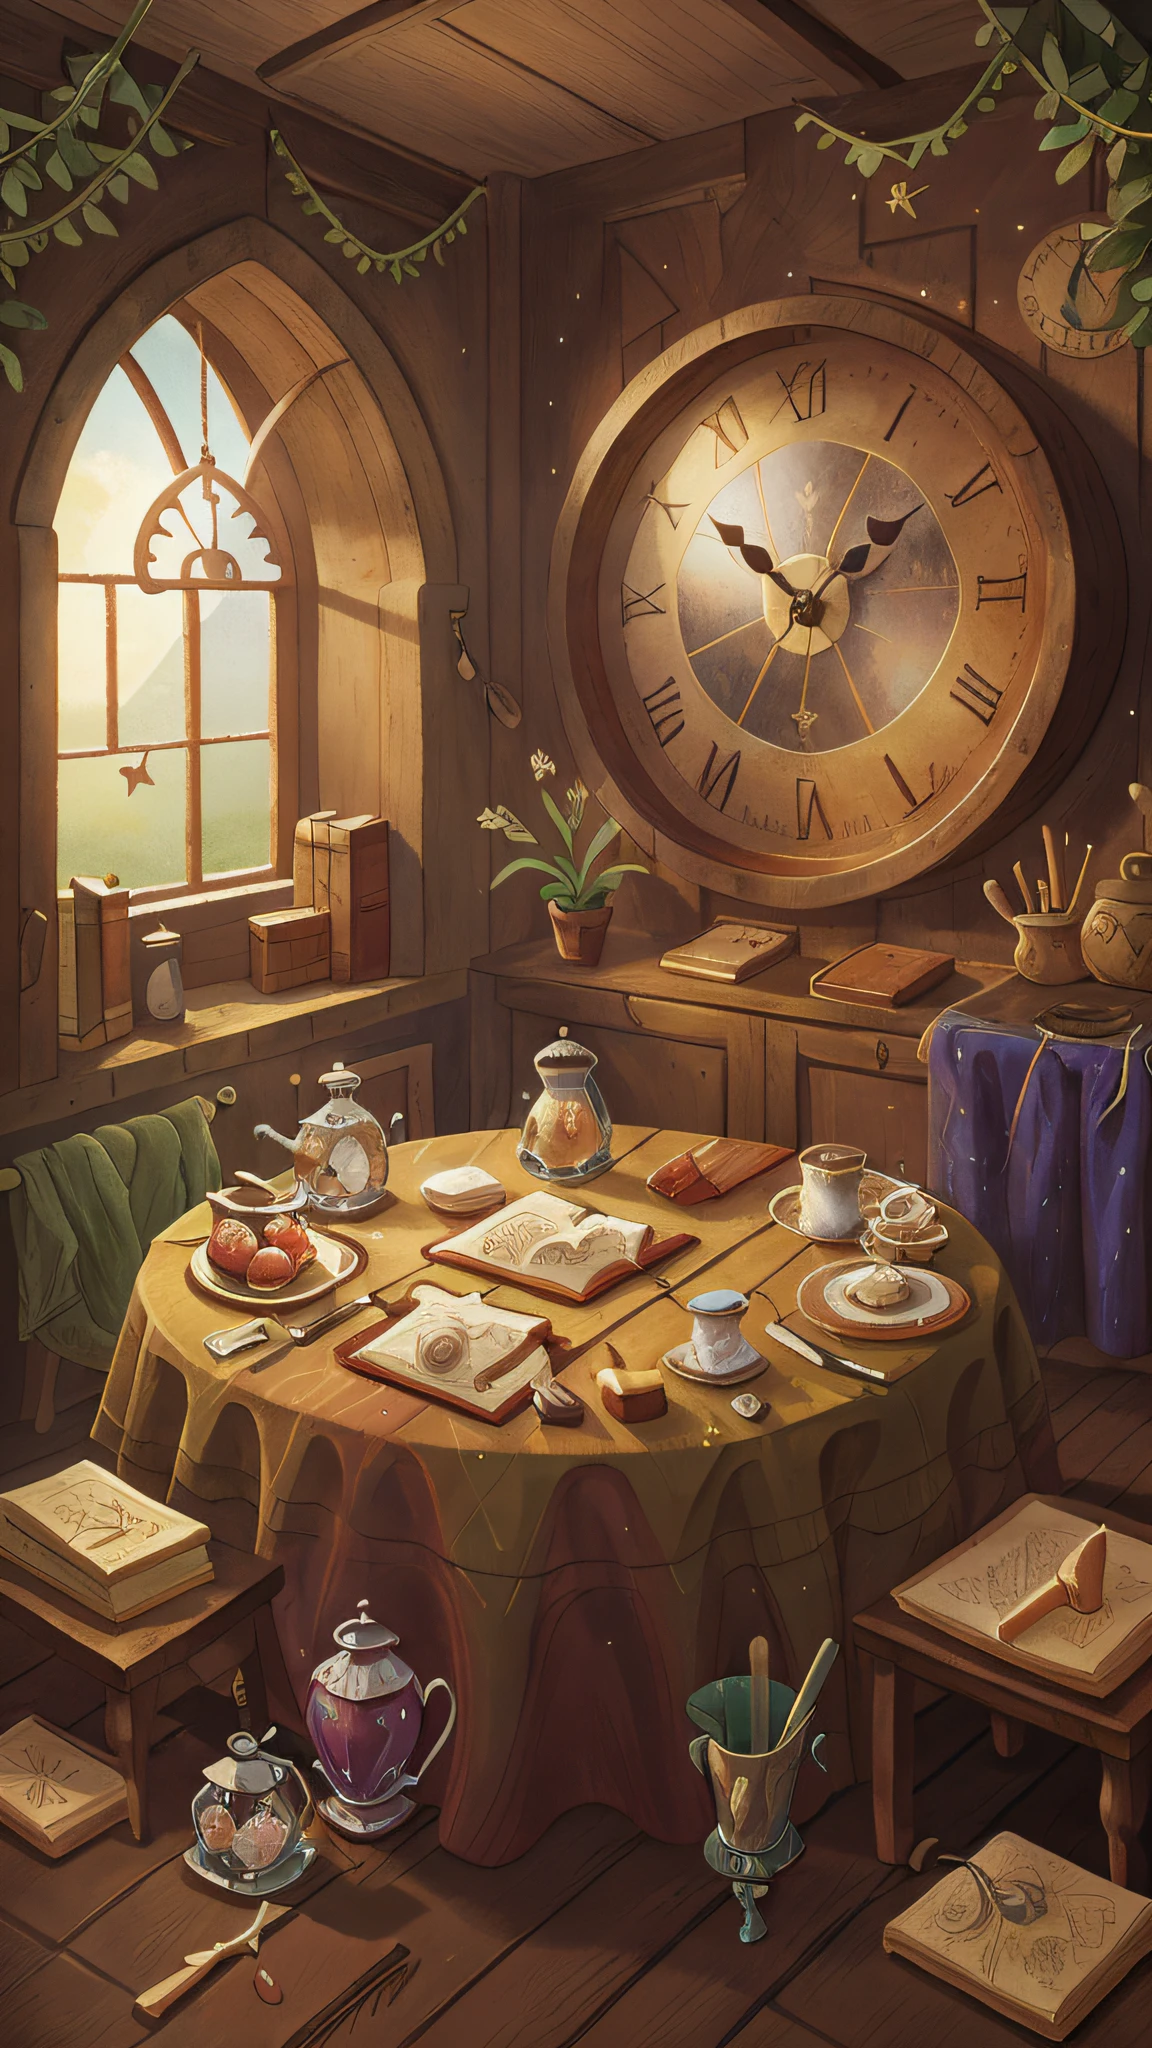 中世紀風格的客房, 顯示視窗, 桌子, 水晶鍋和掛鐘